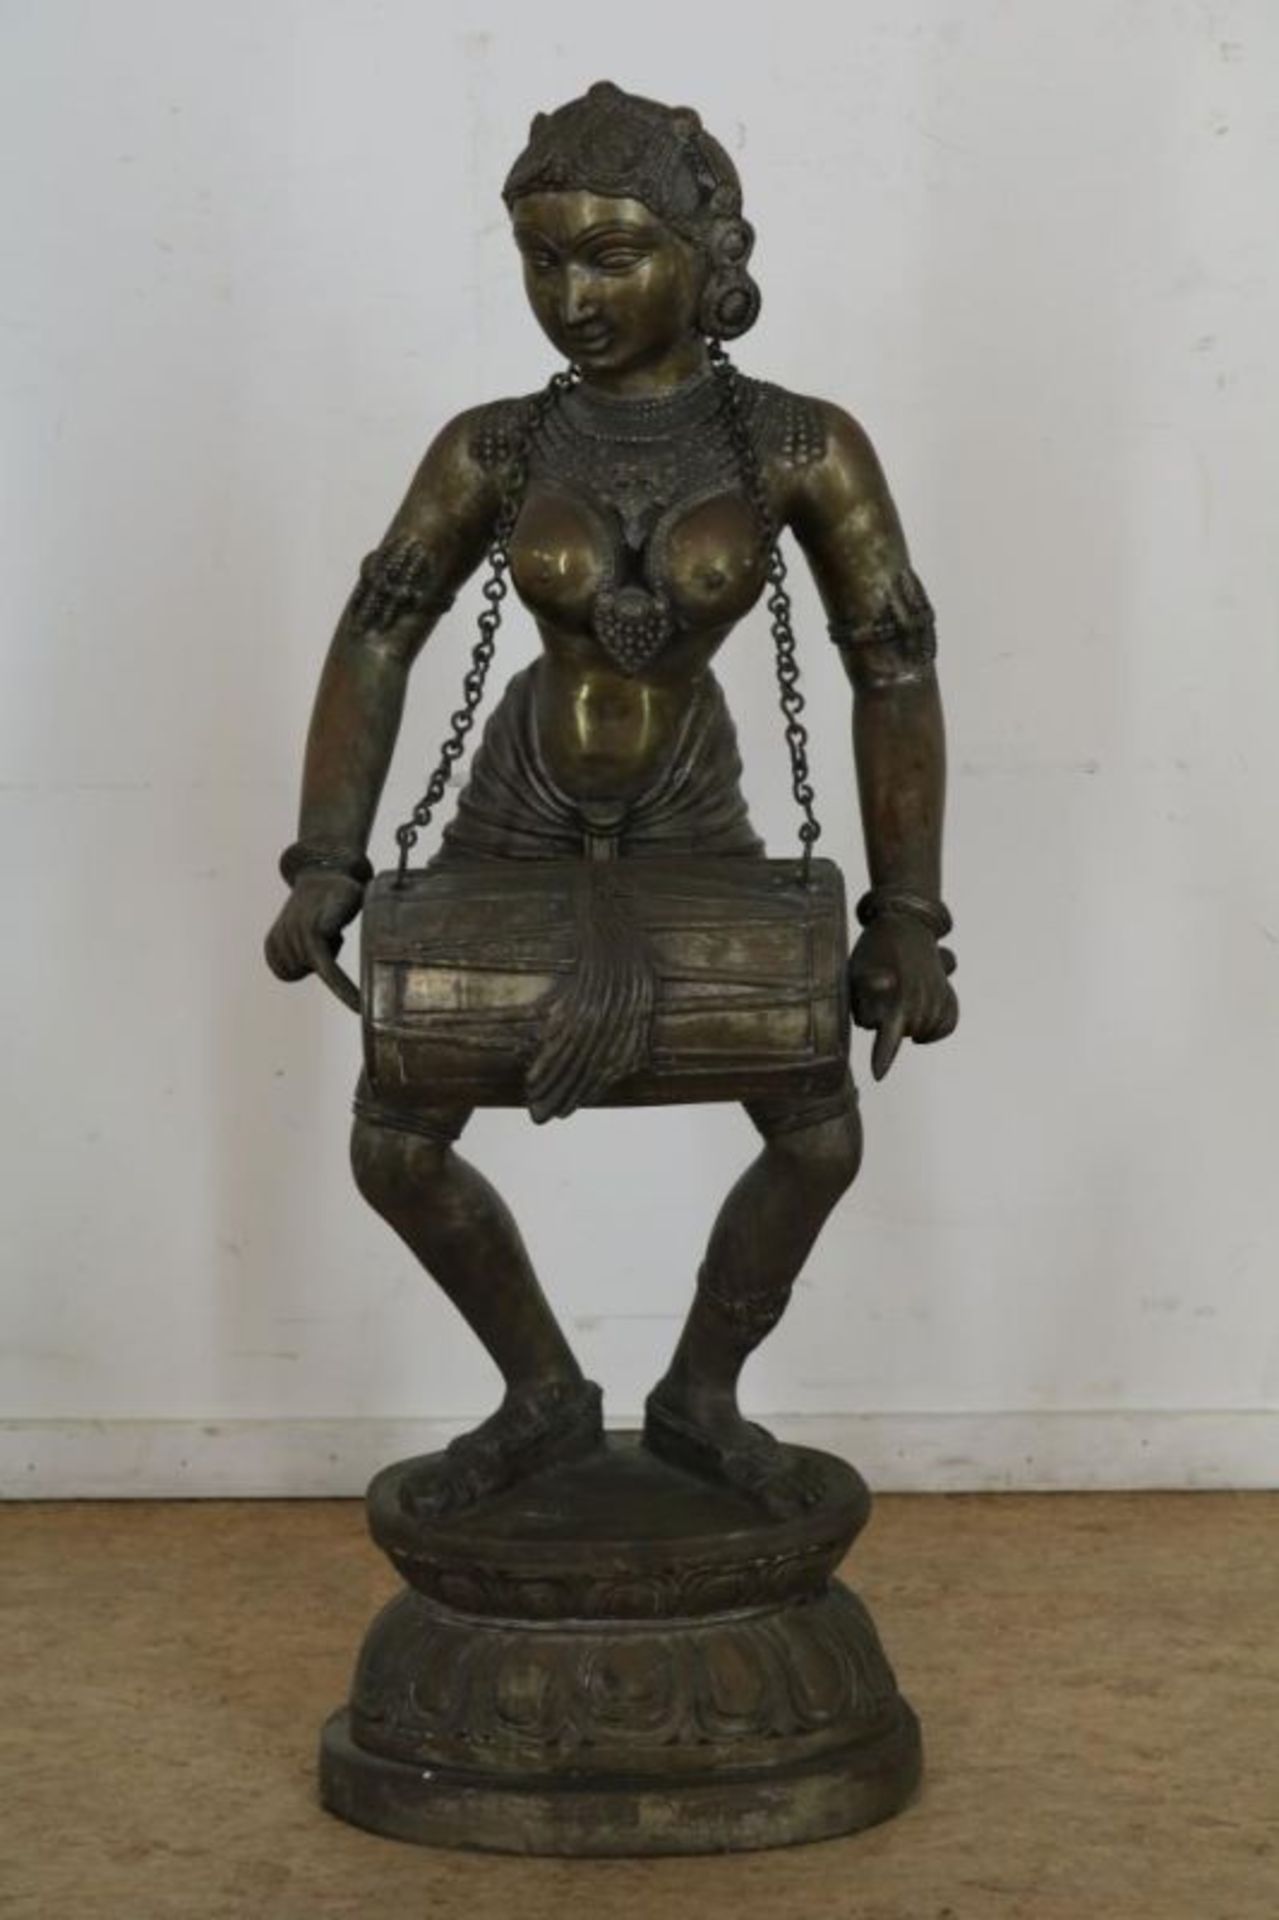 Bronzen sculptuur van Deepa Lakshmi met een Mridangam trommel, India, h. 100 cm. bronze sculpture of